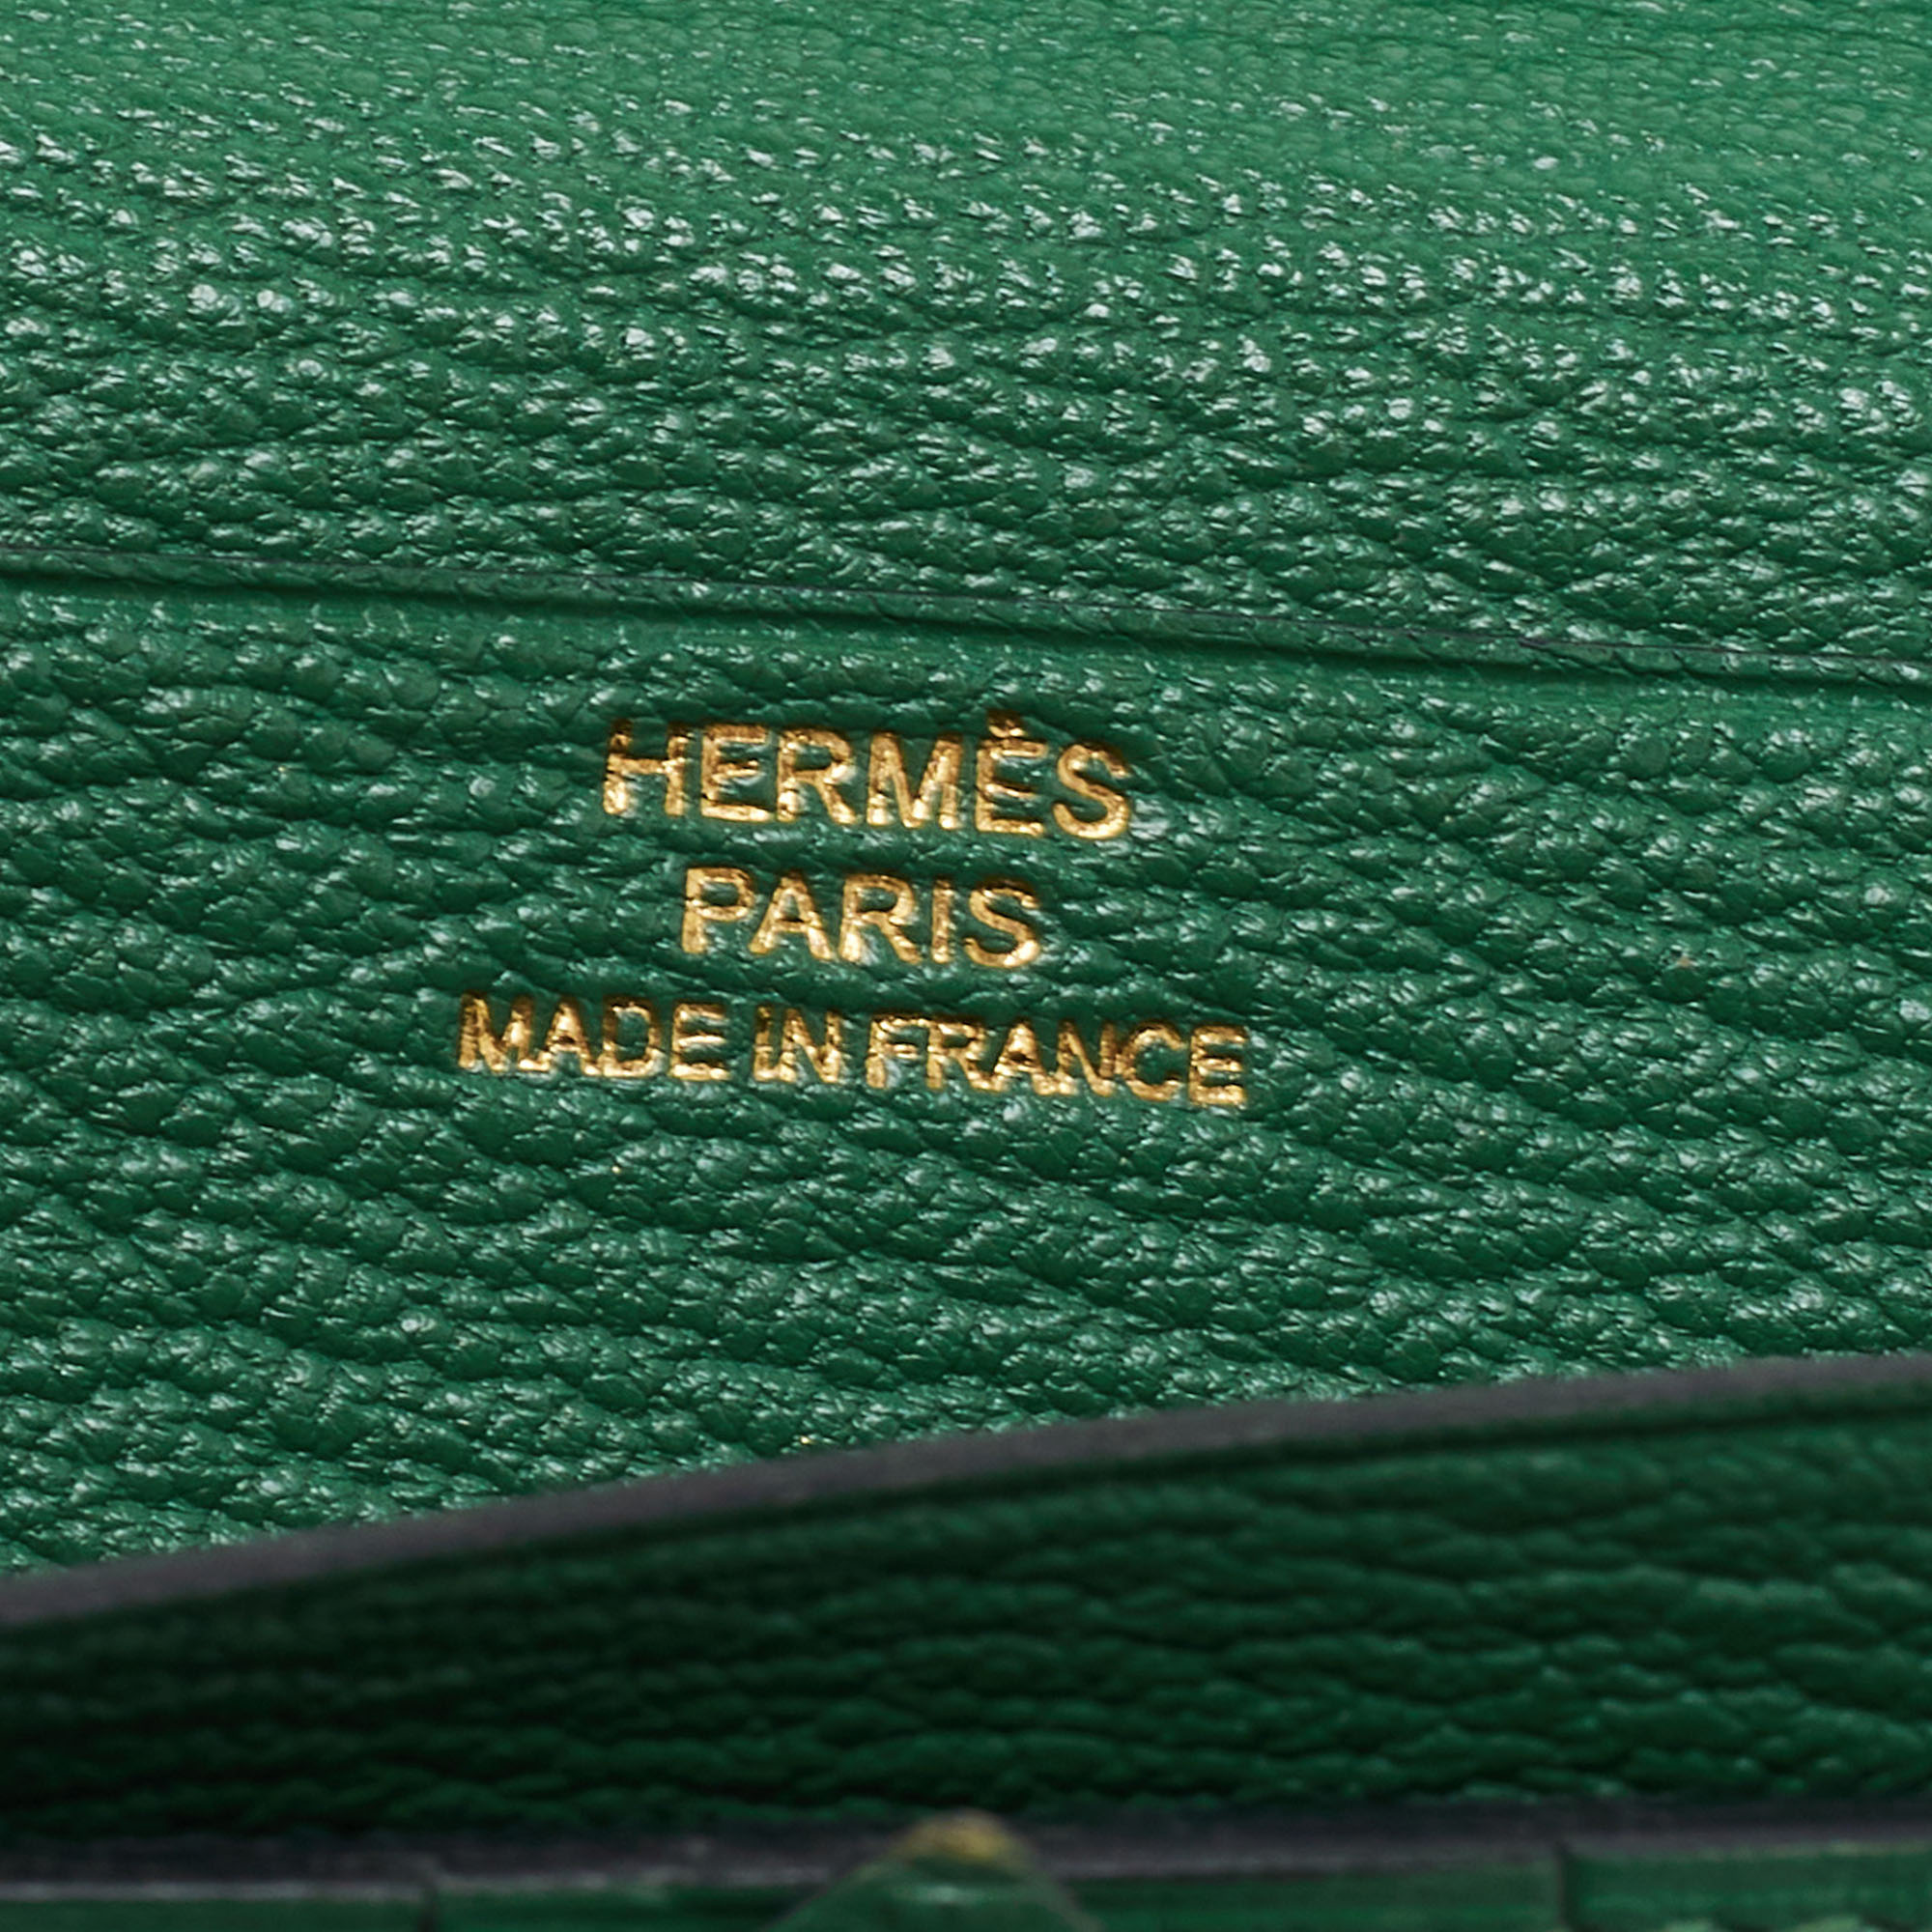 Hermés Vert Bengal Chevre Leather Bearn Gusset Wallet